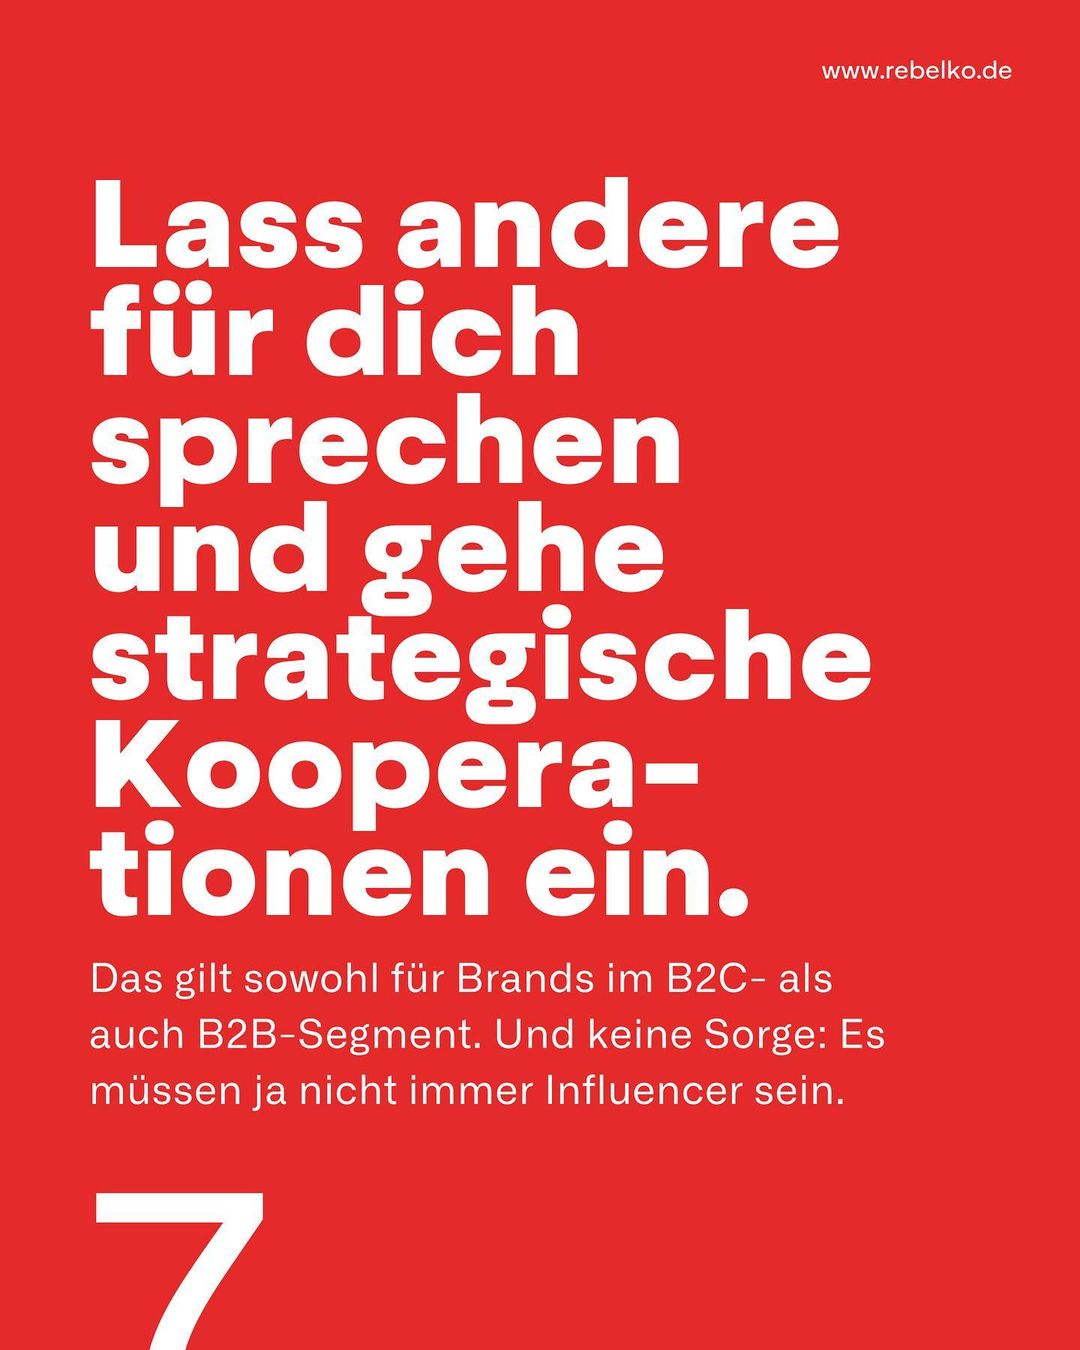 Wie du vertrauen in eine marke aufbaust REBELKO Agentur Aachen Marketing  Design Kreativ Strategie Social Media Konzeption Beratung Creatives Digital 09